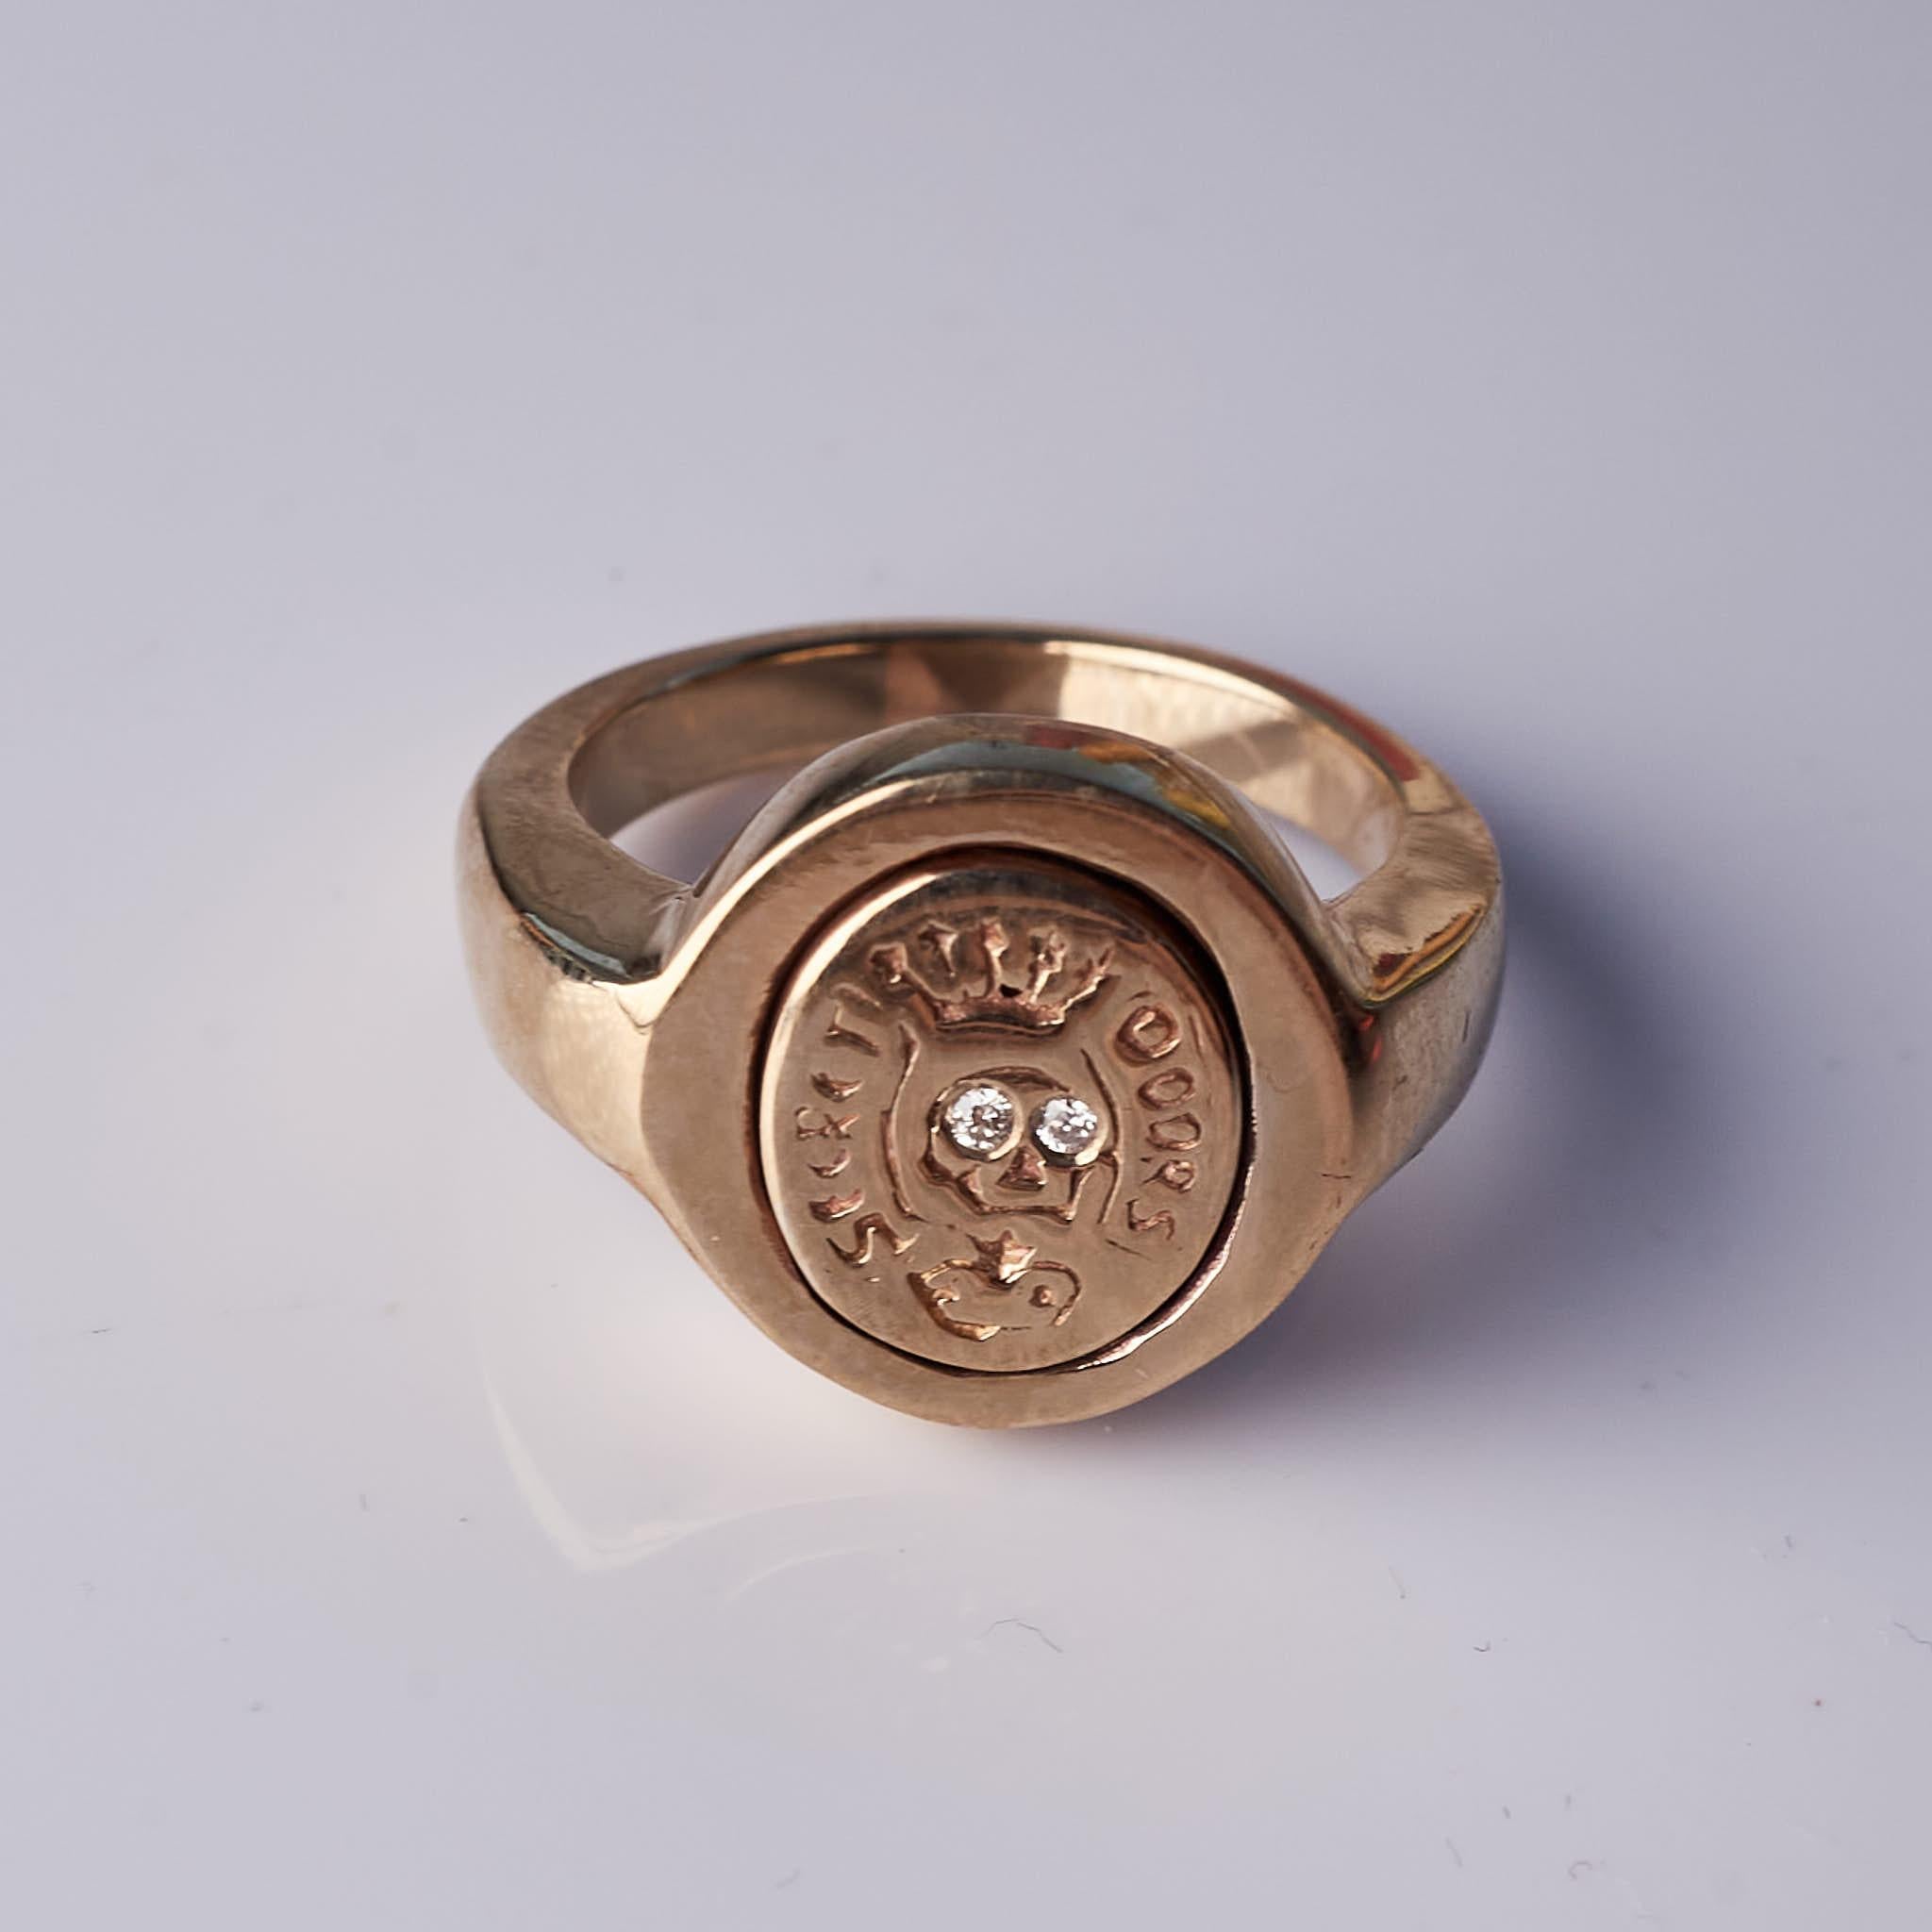 Weißer Diamant Siegelring im Memento Mori Stil Totenkopf 
MATERIAL: Bronze
Designer: J DAUPHIN 
Größe: 6 1/2
Signaturstück 